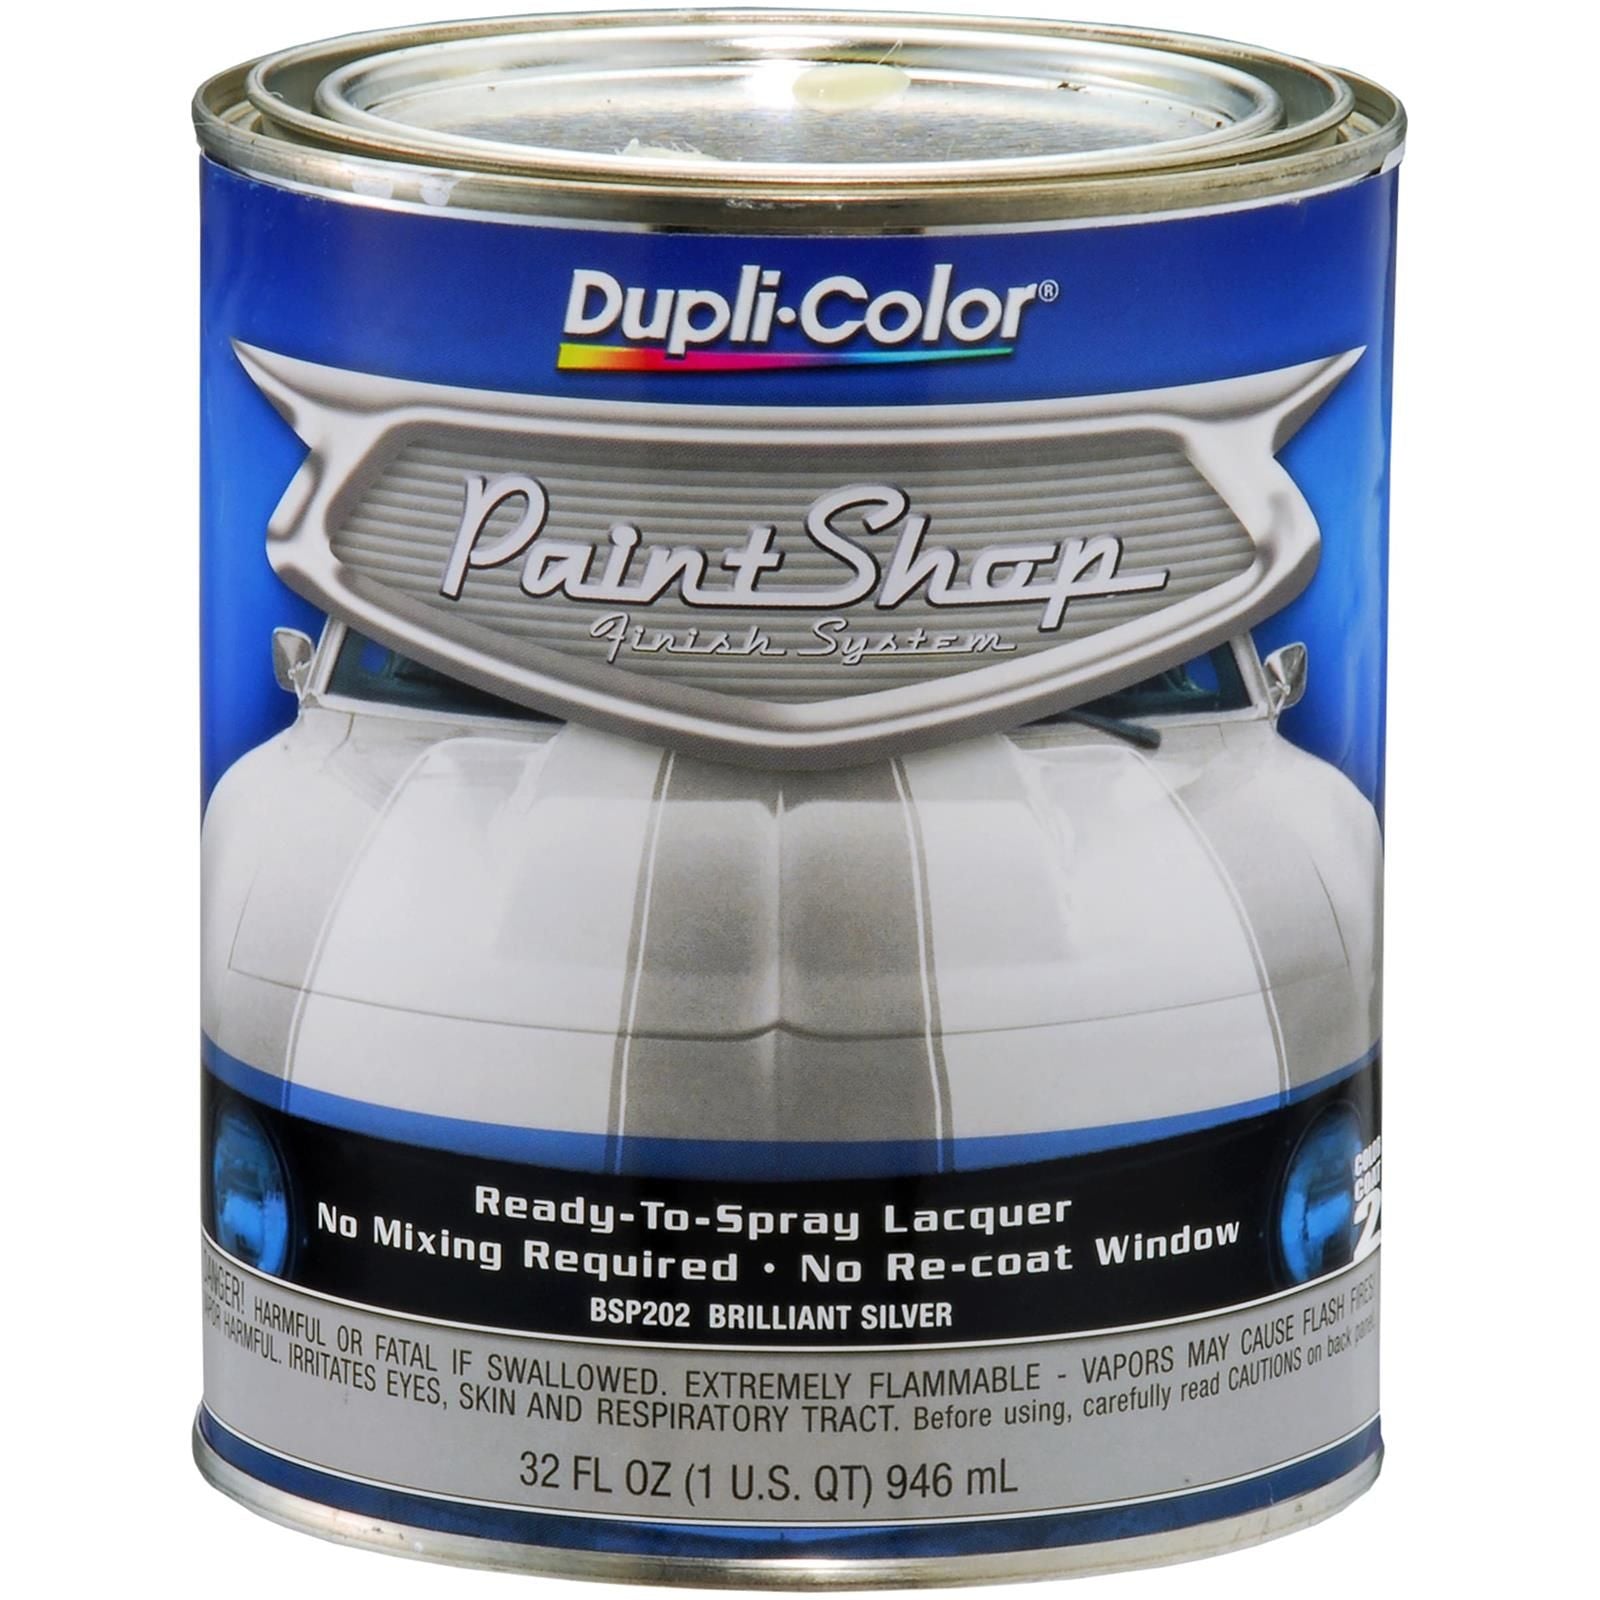 Dupli-Color Paint Shop Brilliant Silver Automotive Lacquer Finish System 1 Quart BSP202